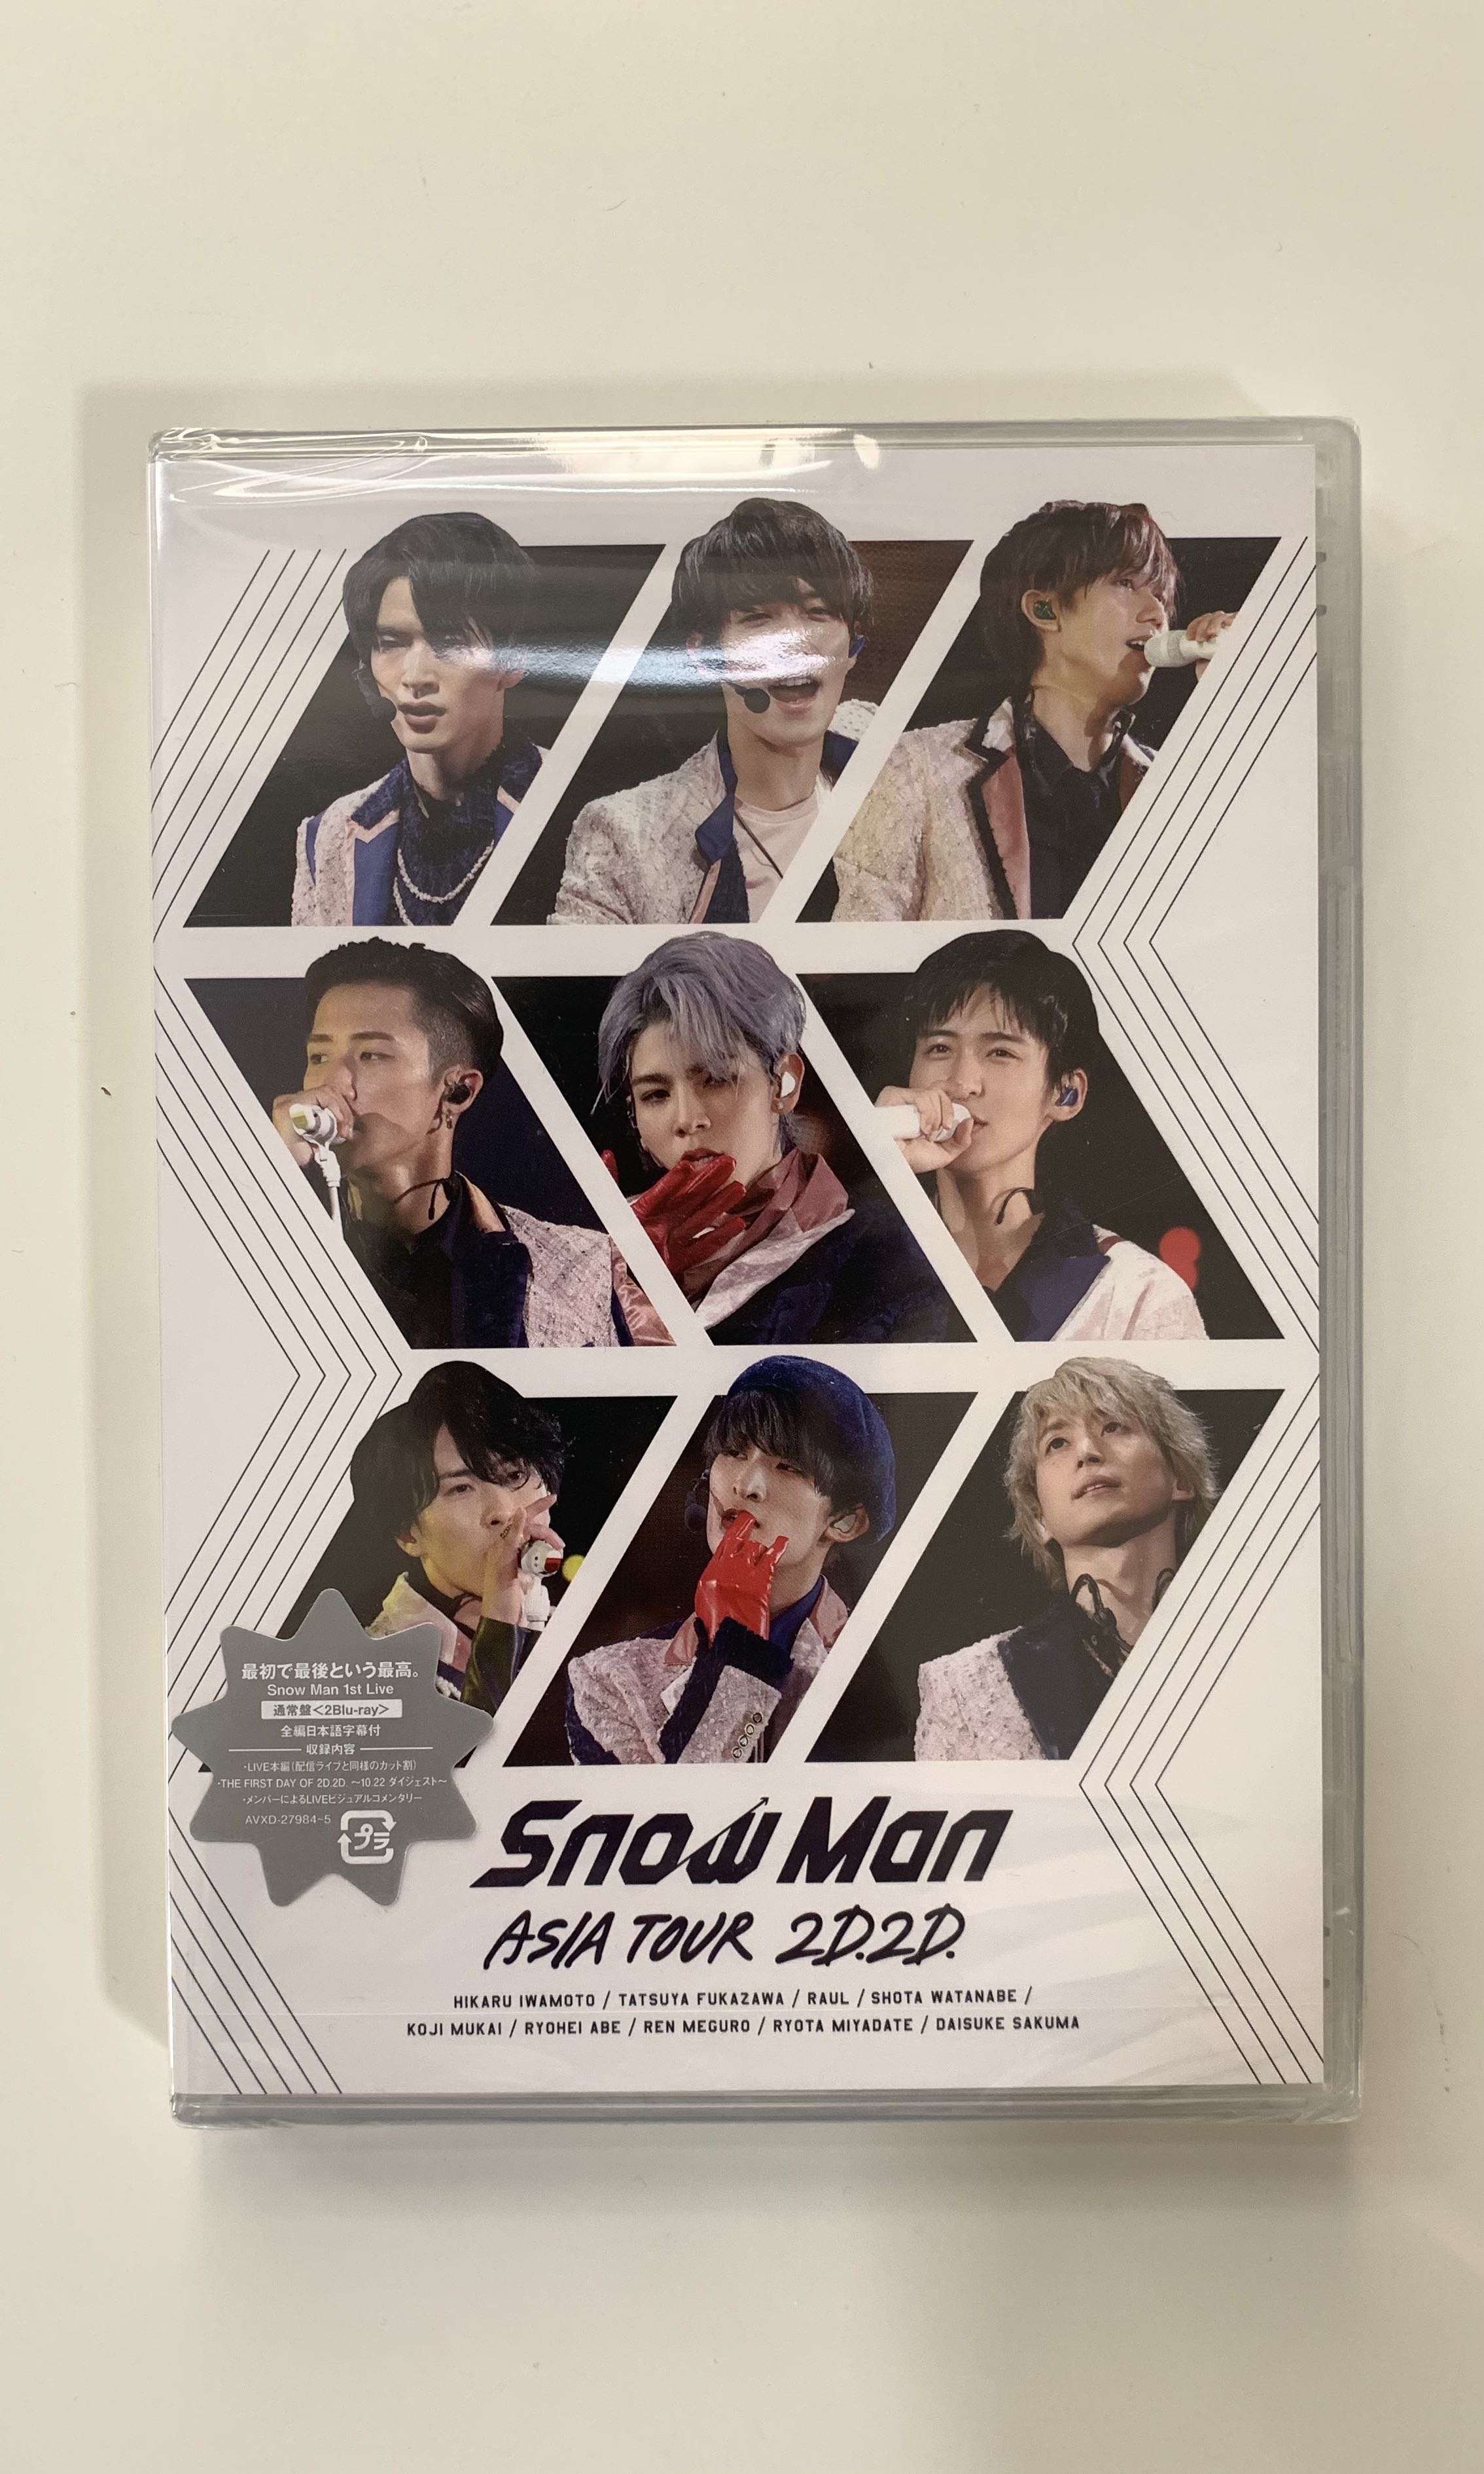 全新日版Snowman Asia tour 2D2D 通常盤blue ray, 興趣及遊戲, 收藏品